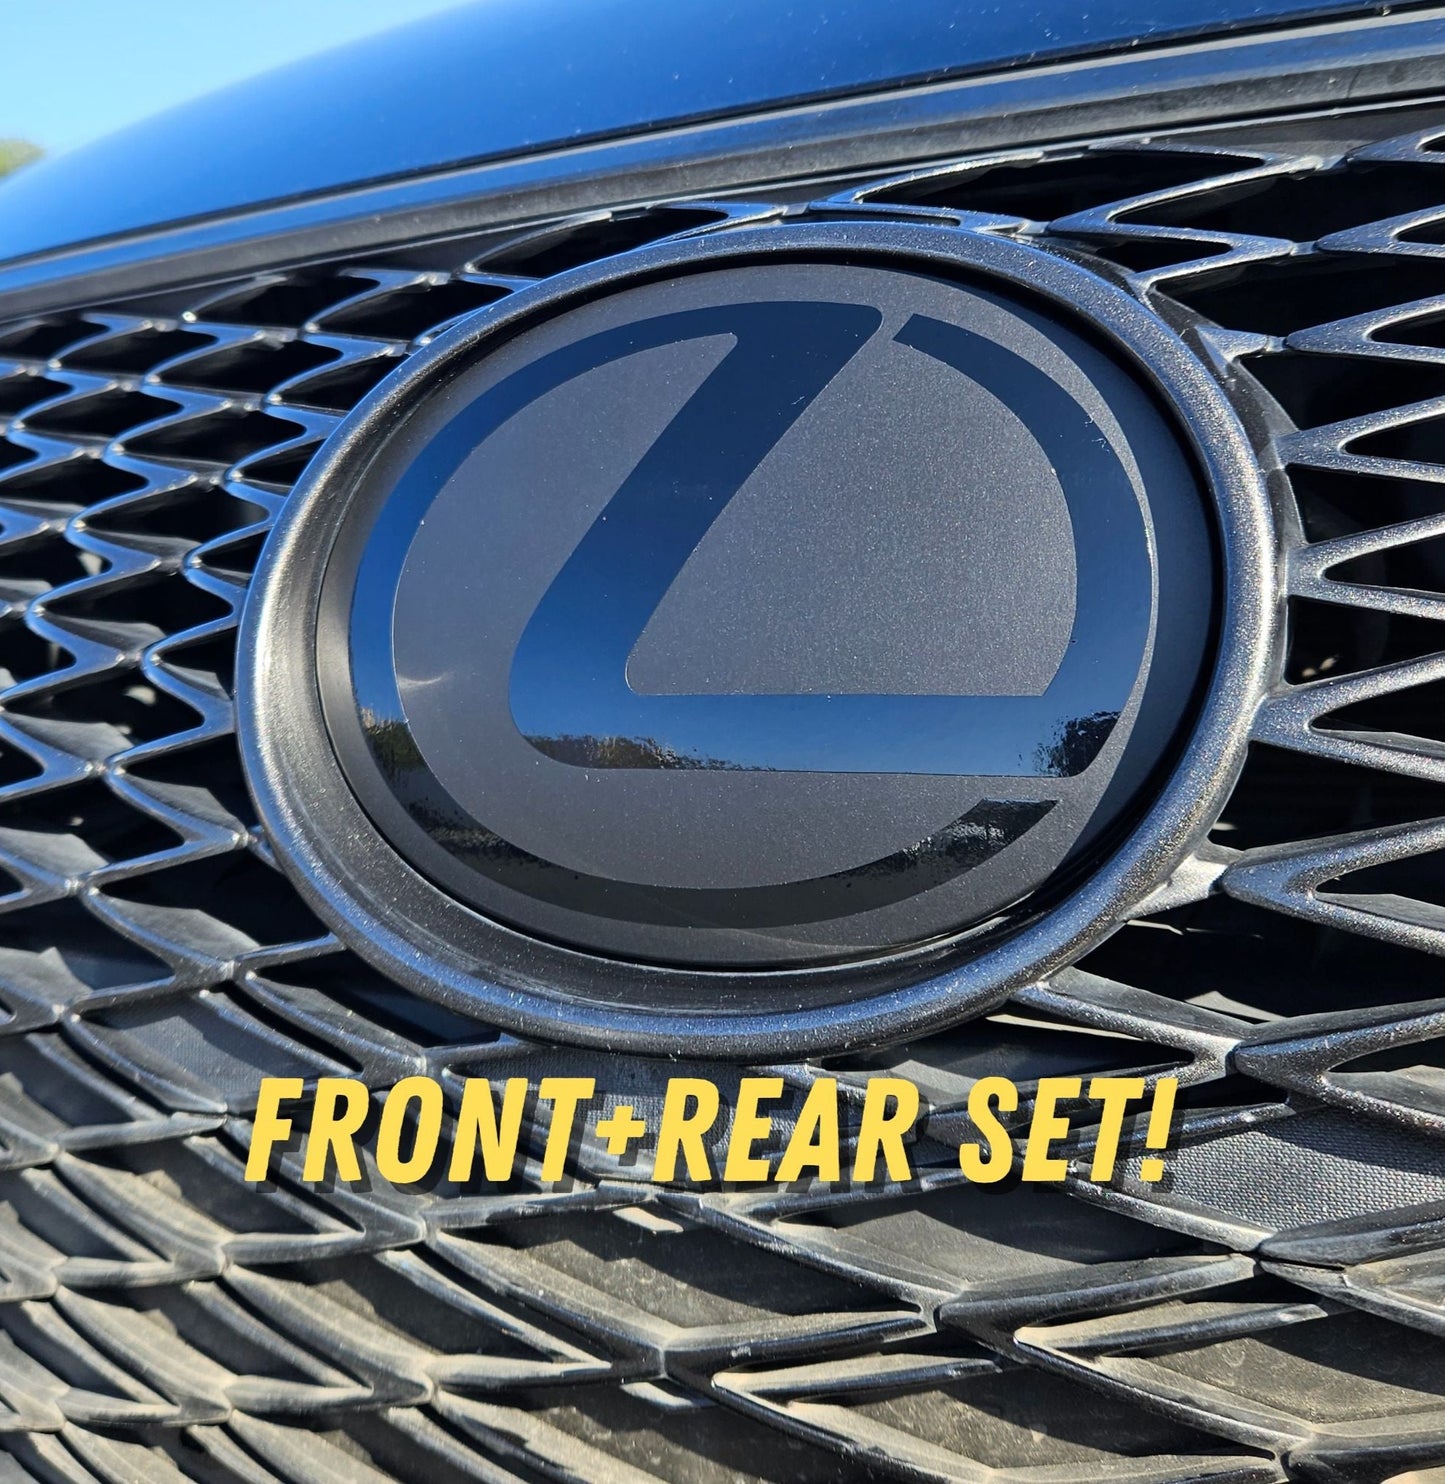 Stealth Lexus Emblem SET Vinyl Overlay Decal Front & Rear